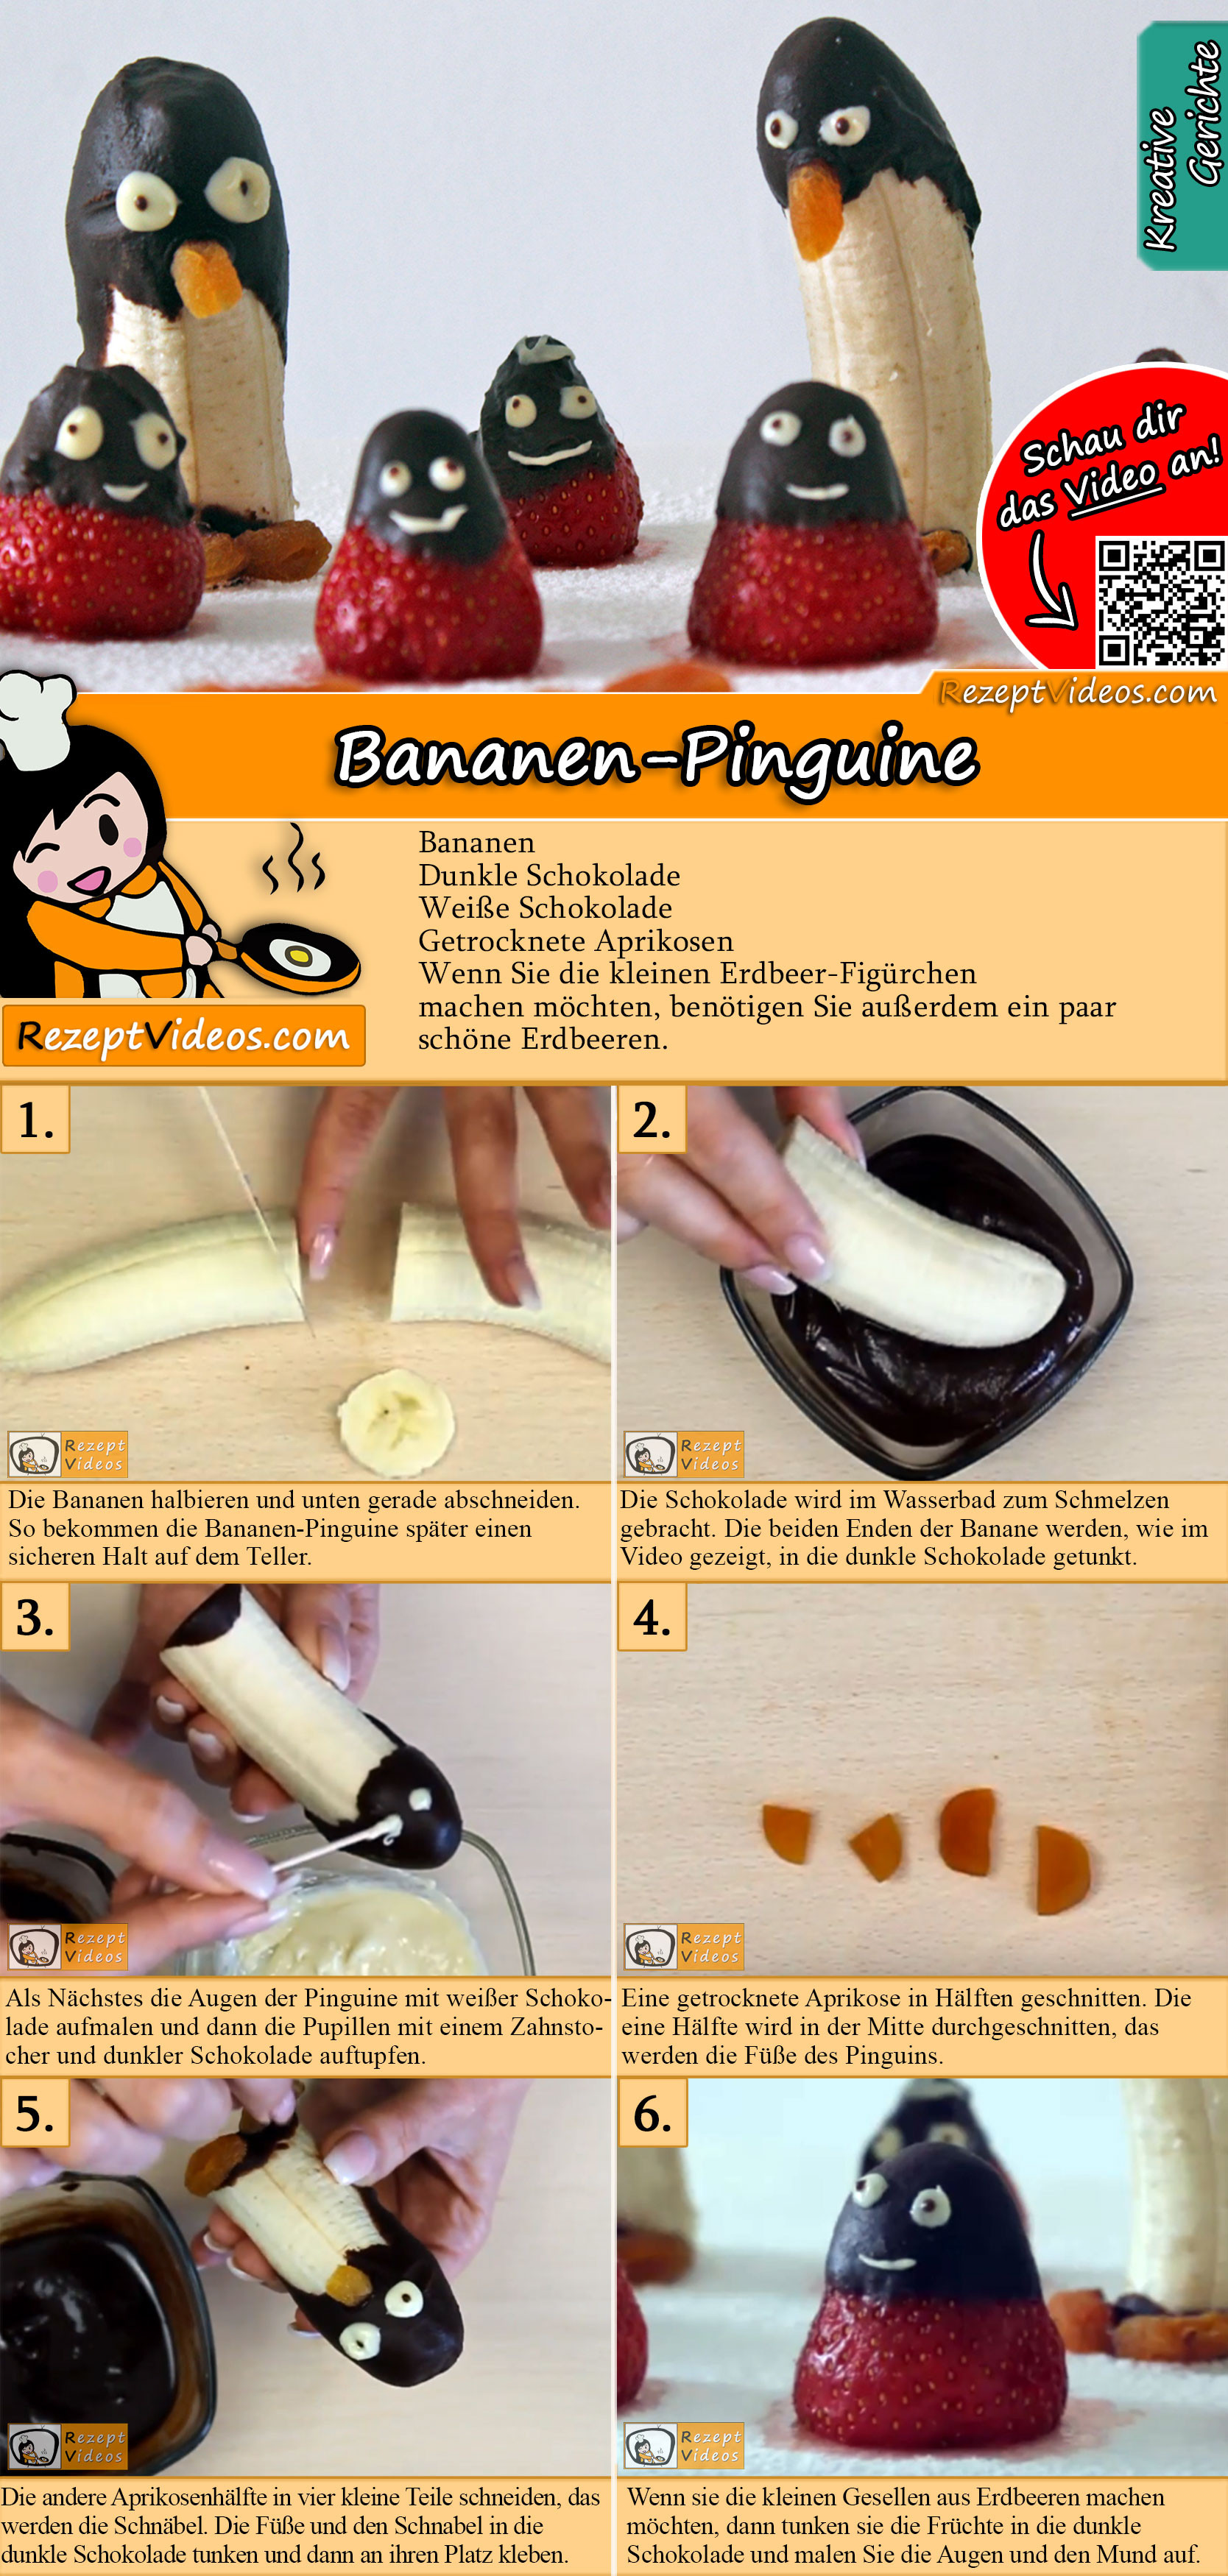 Bananen-Pinguine Rezept mit Video